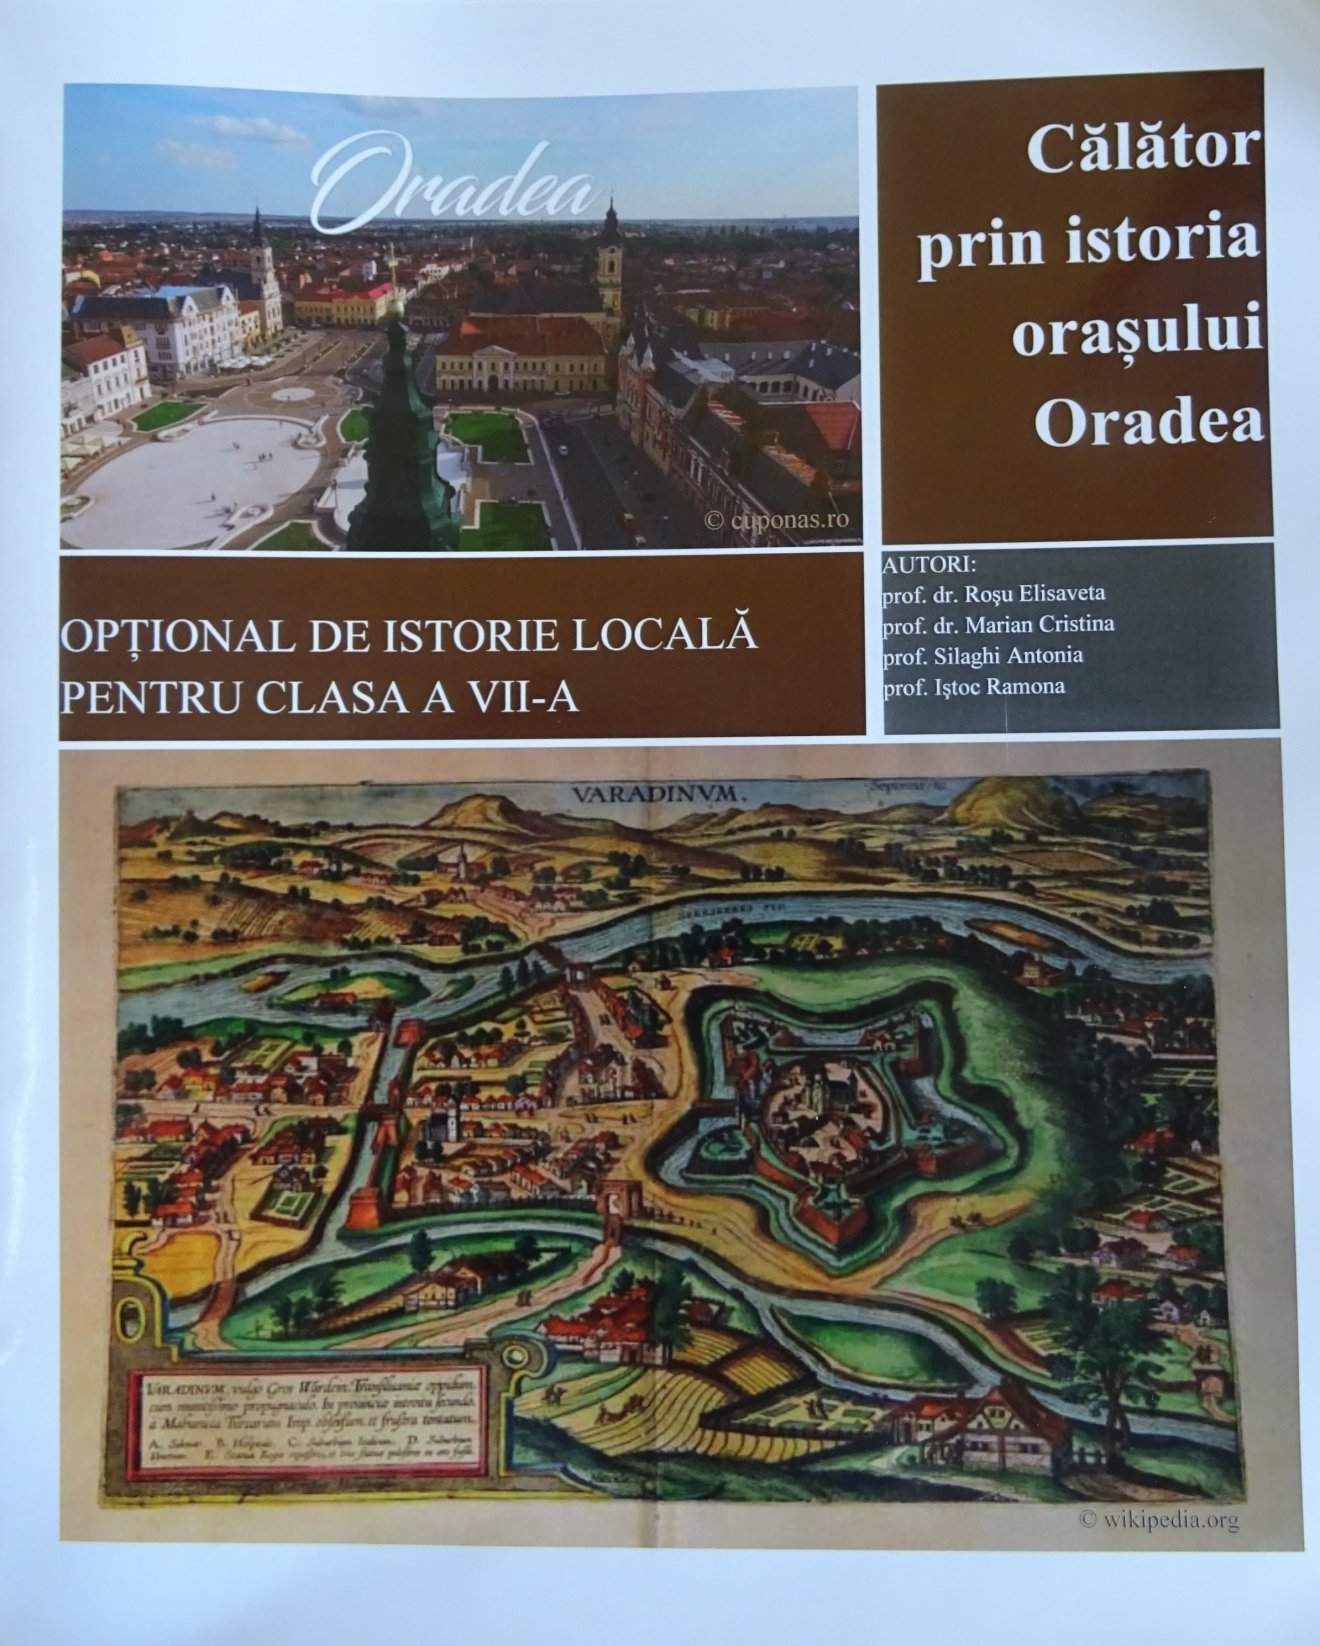 Csak kiindulópont lehet a Nagyvárad-tankönyv: a román történelemszemléletet tükrözi a város történetét összefoglaló kiadvány